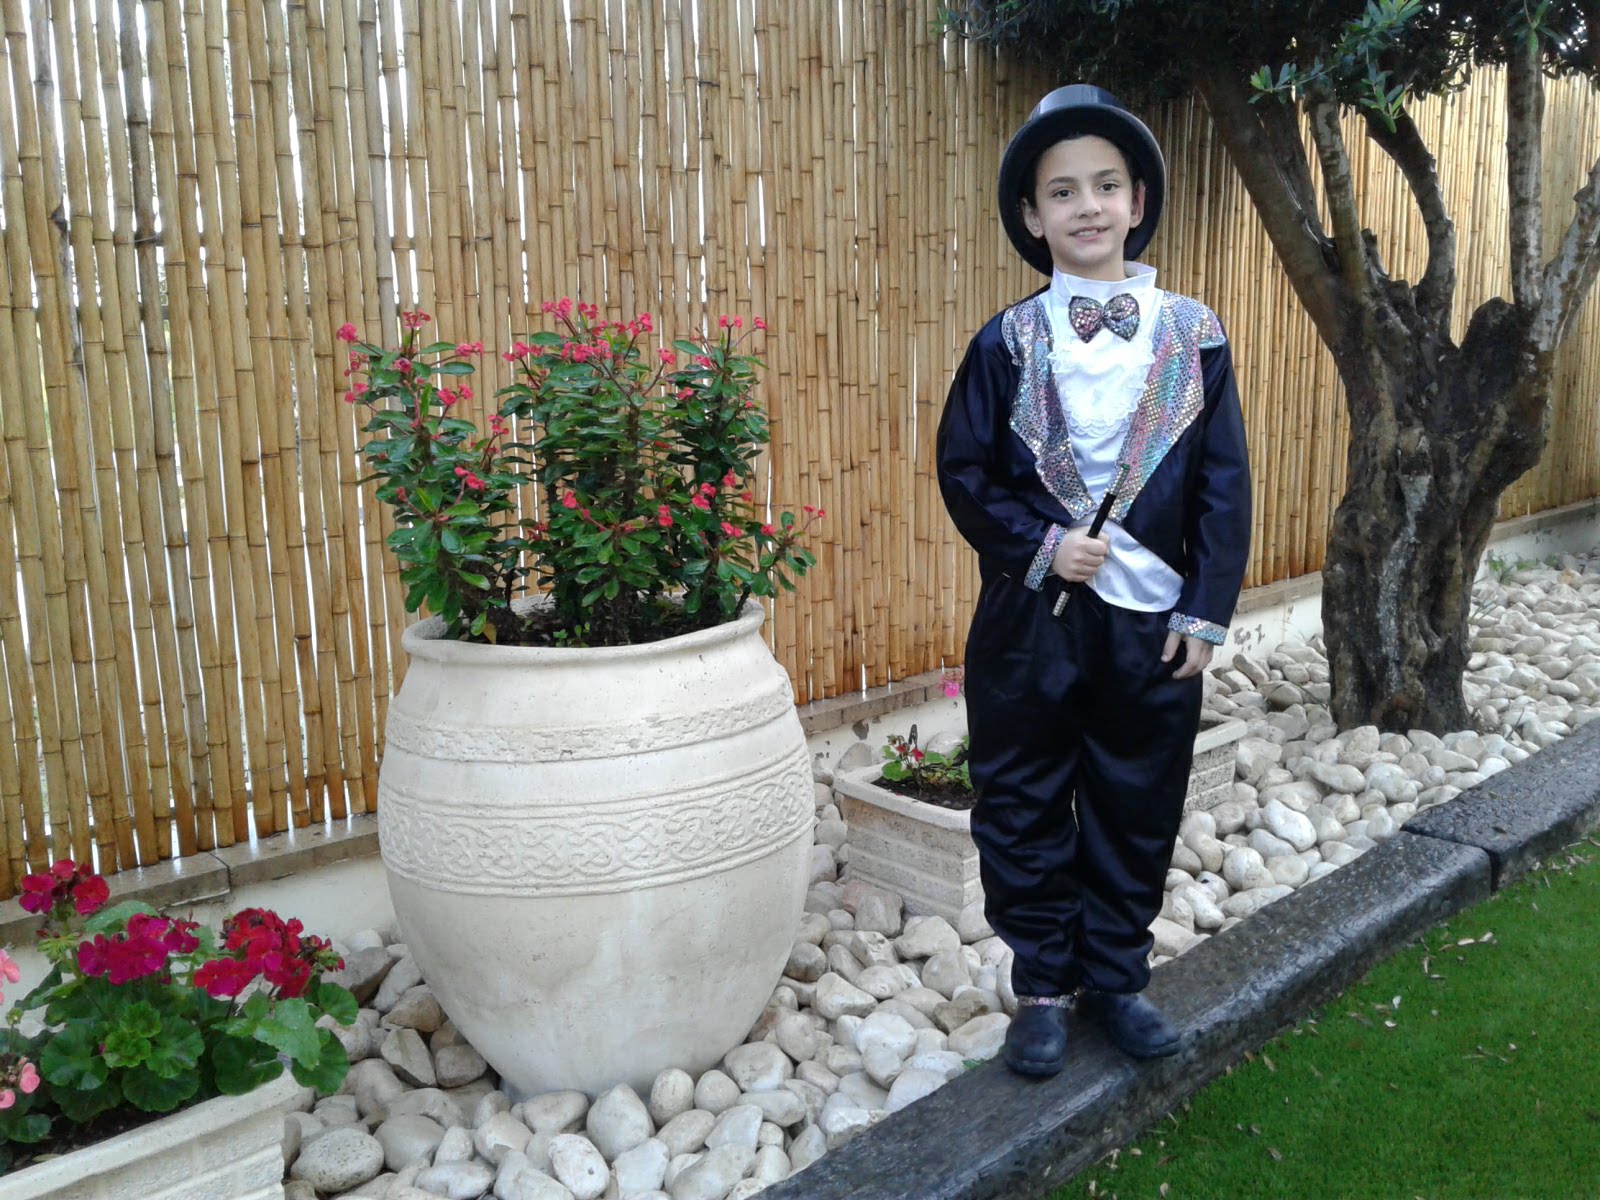 יצחק זגורי בן 8 וחצי, התחפש לקוסם